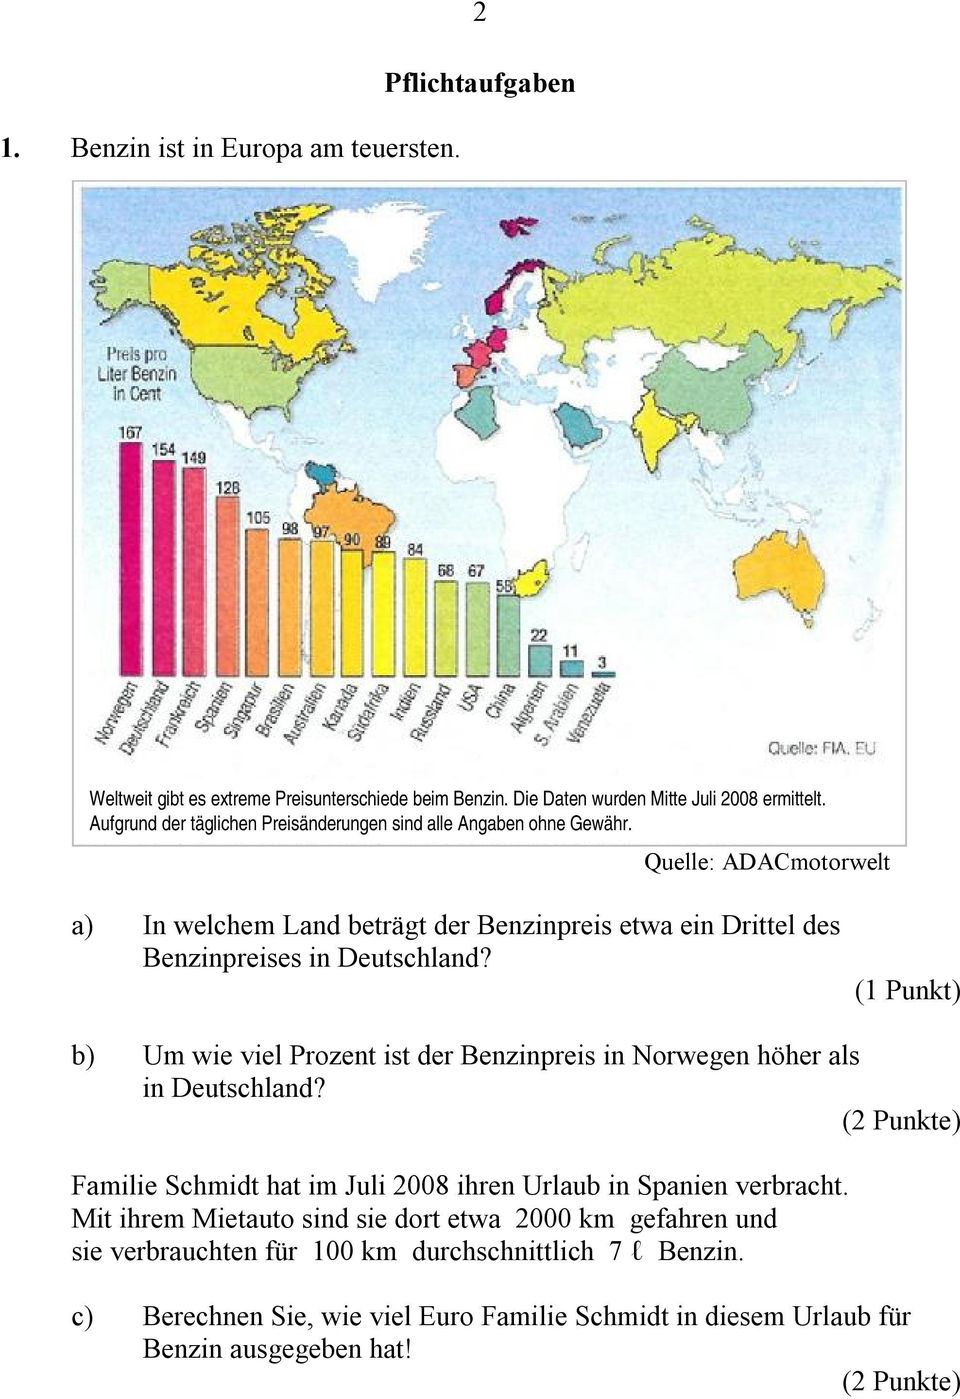 Quelle: ADACmotorwelt a) In welchem Land beträgt der Benzinpreis etwa ein Drittel des Benzinpreises in Deutschland?